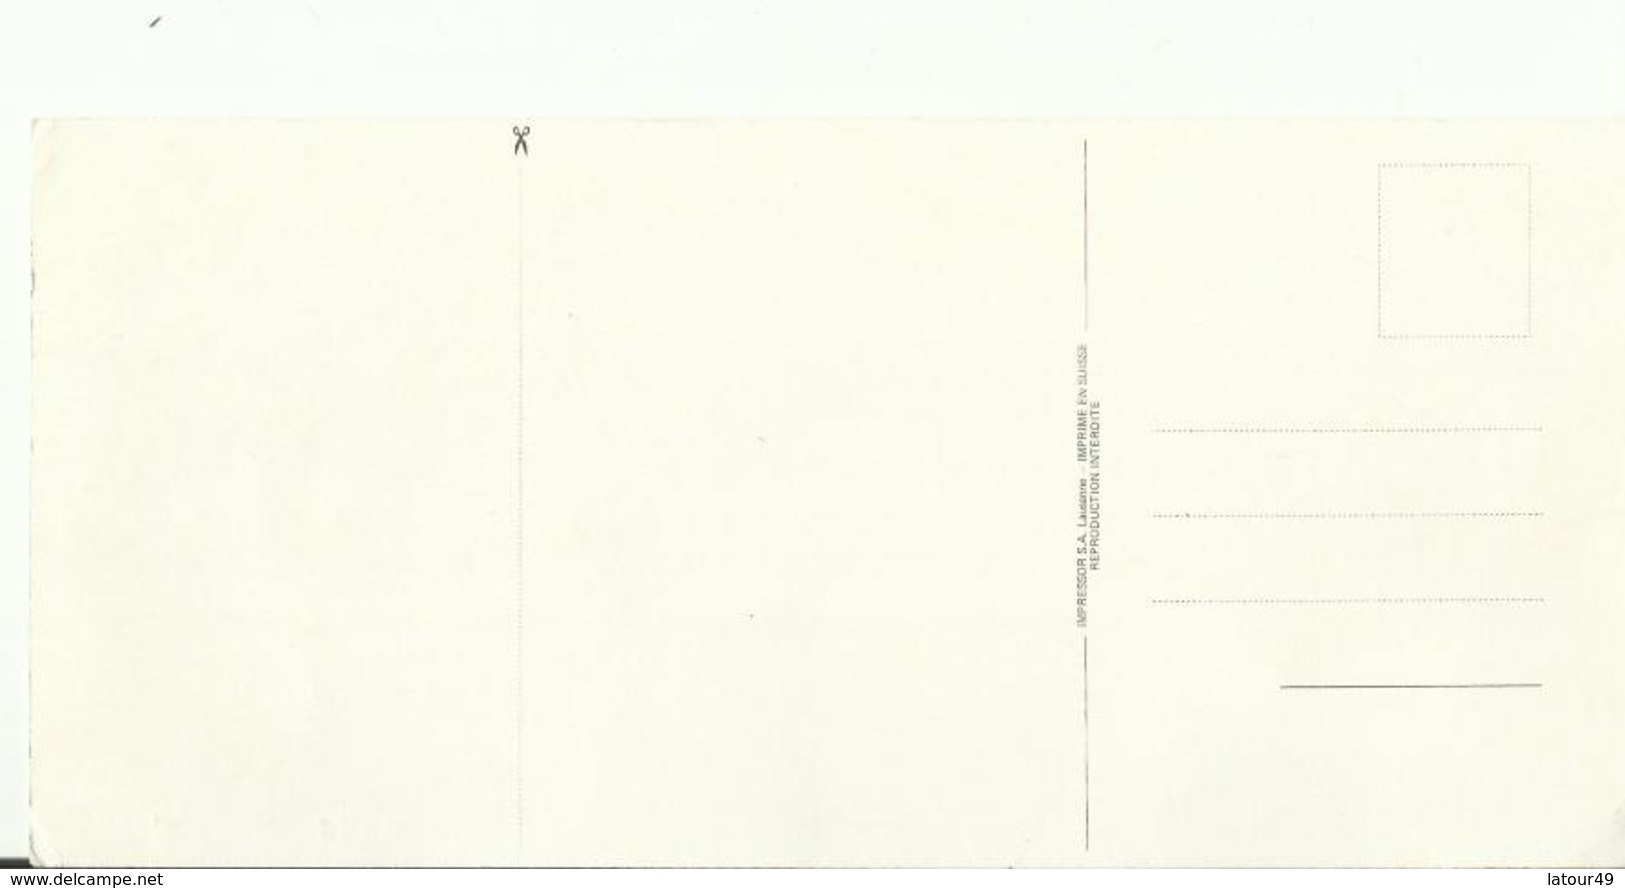 Carte Avec Timbre Bi Centenaire Des Etats Unis D Amerique 1776 1976 Timbre Original Carte Postale Philatelique No 5606 - Autres - Amérique